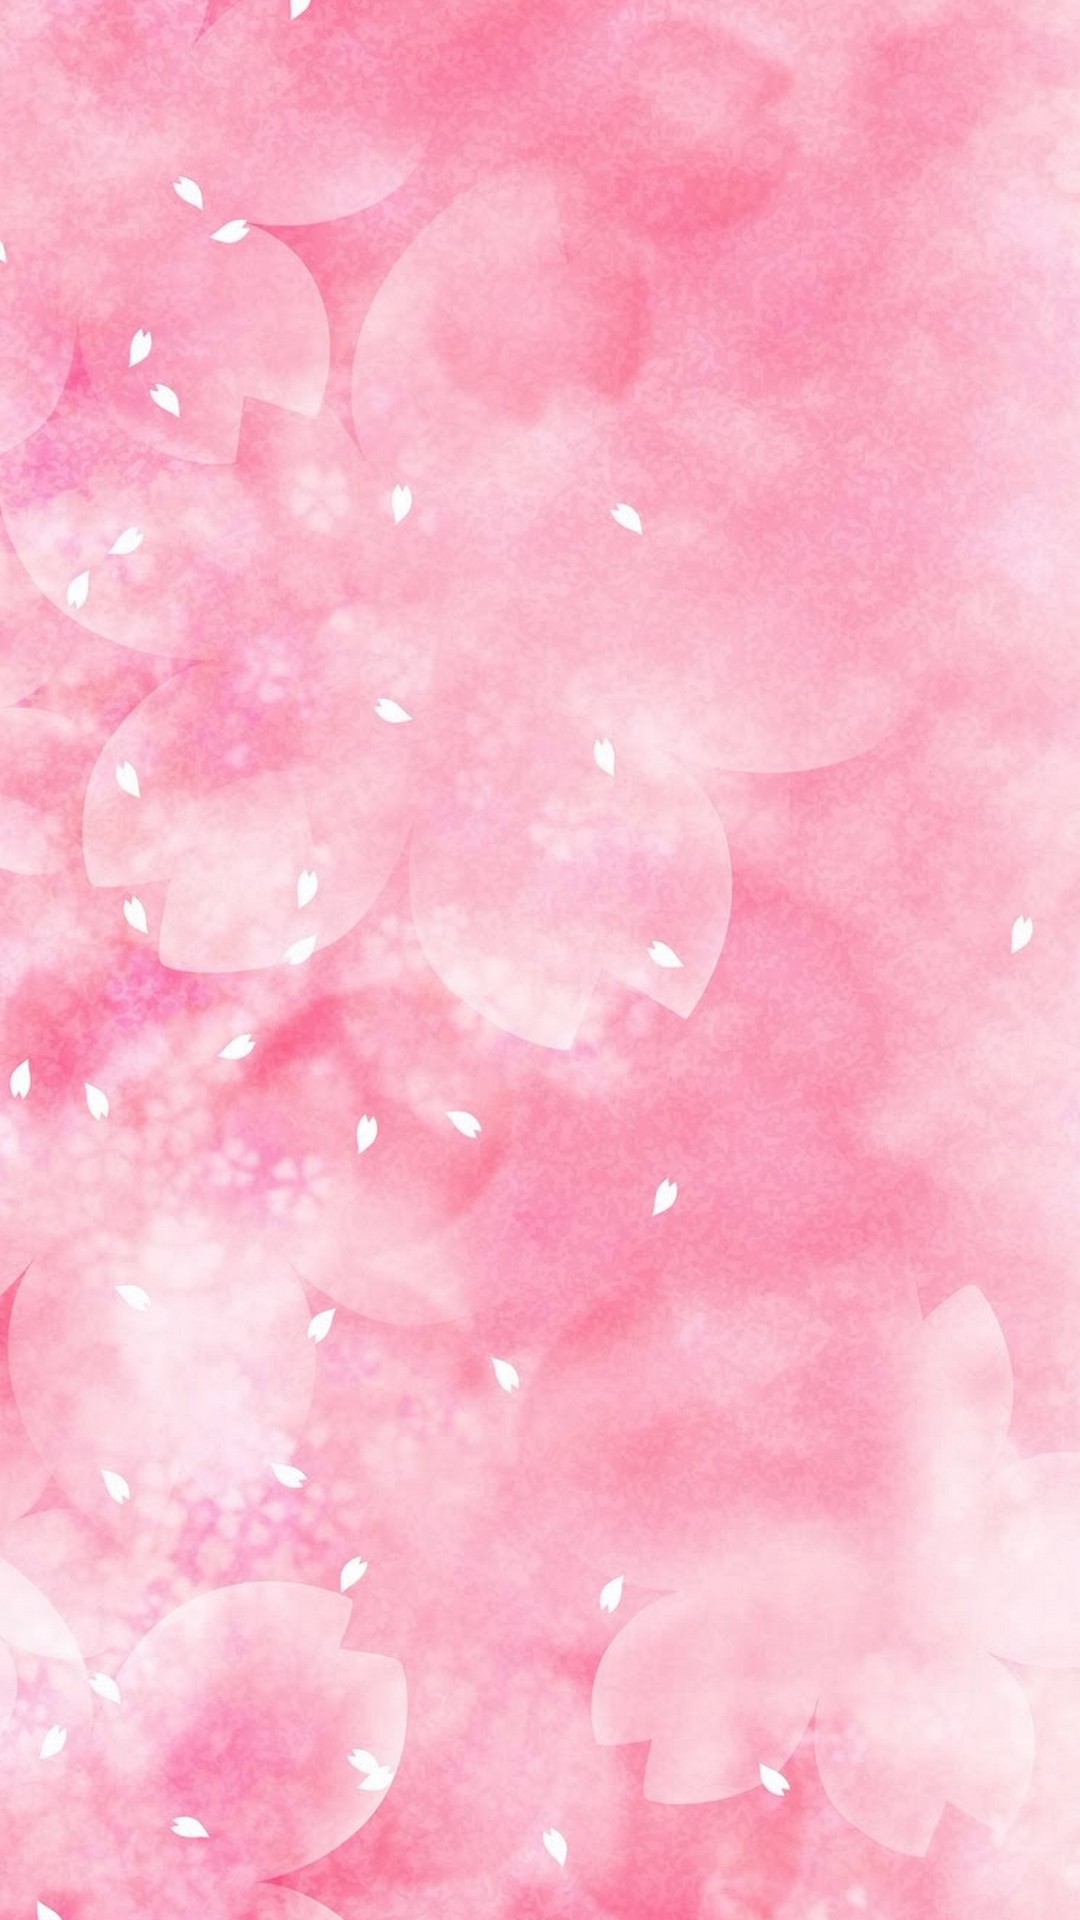 Download 21 pink-cute-wallpapers Pink-cute-strawberries-cocoppa-iPhone-wallpaper-Kawaii-.jpg